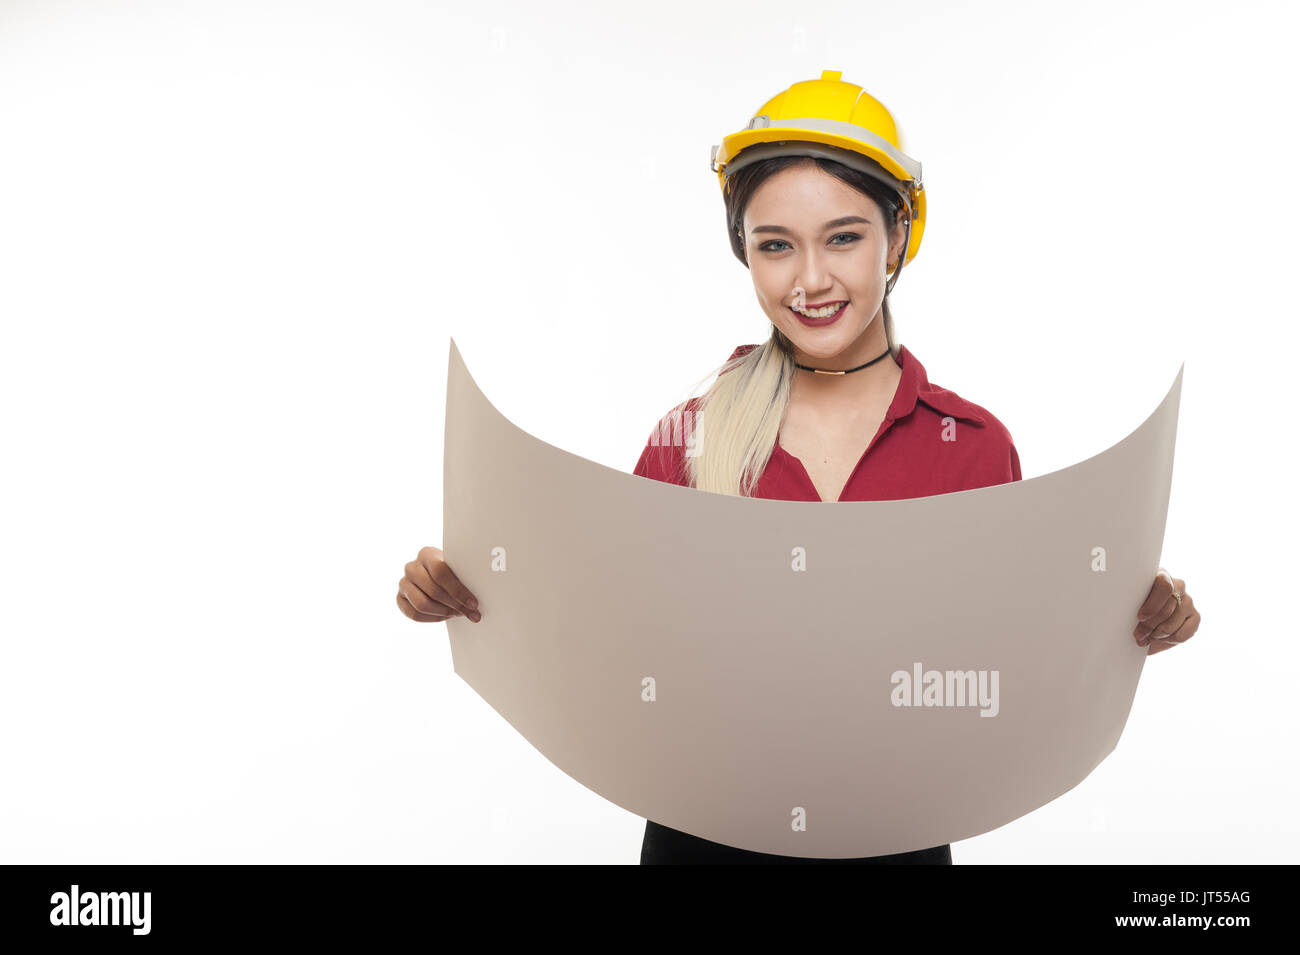 Junge asiatische Frau Architekt mit roten Hemd und gelben Helm Lächeln beim Lesen Blaupausen. industriellen Beruf Personen Konzept Stockfoto